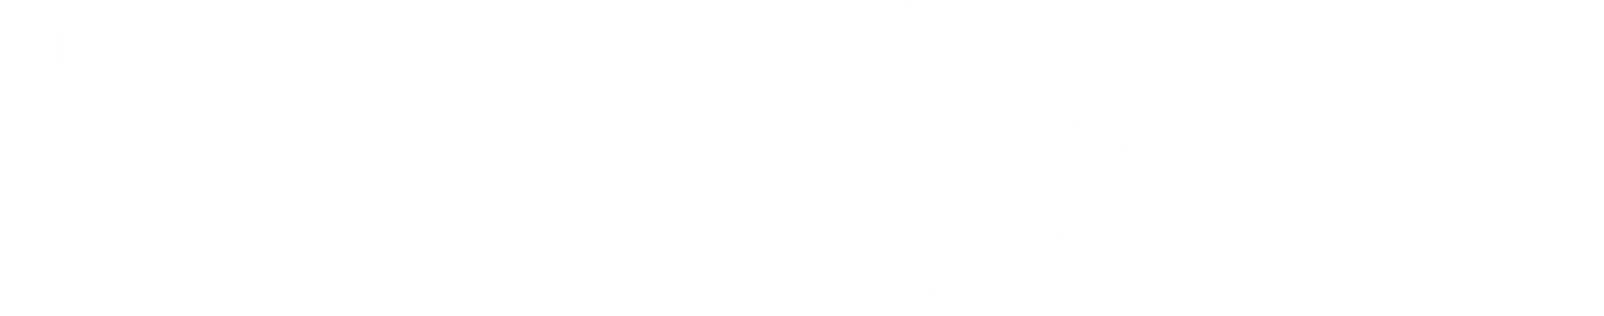 Snusboss logo